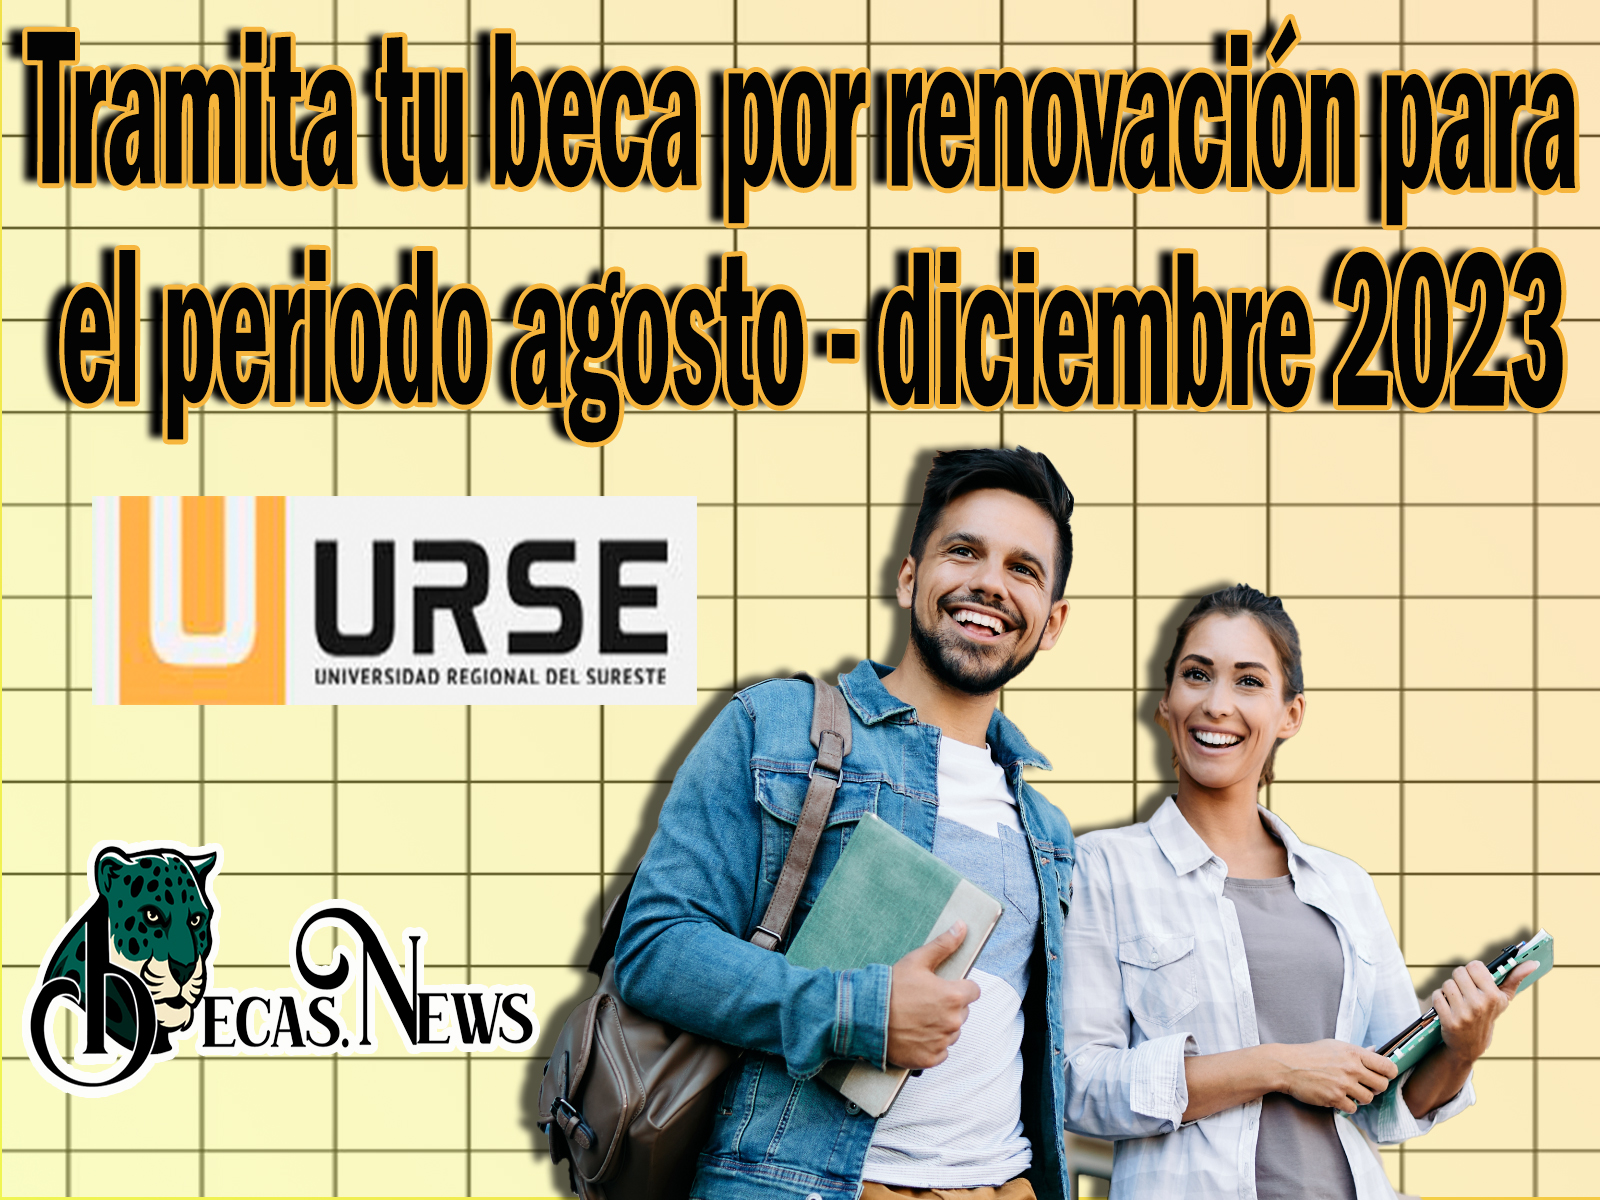 Becas URSE: Tramita tu beca por renovación para el periodo agosto - diciembre 2023